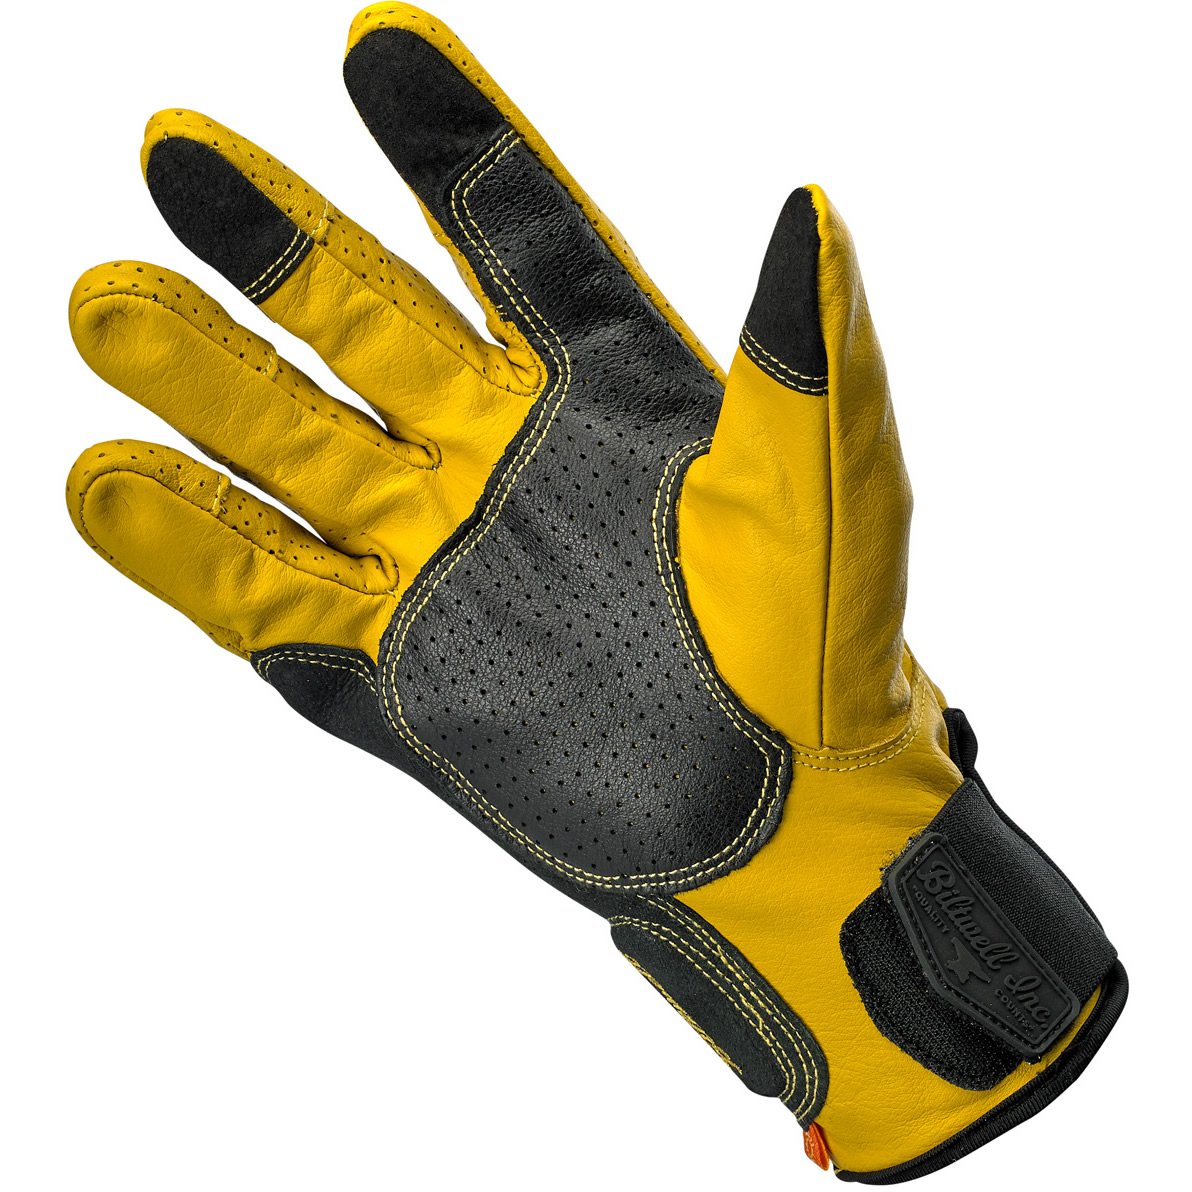 Borrego Gloves Gold/Black